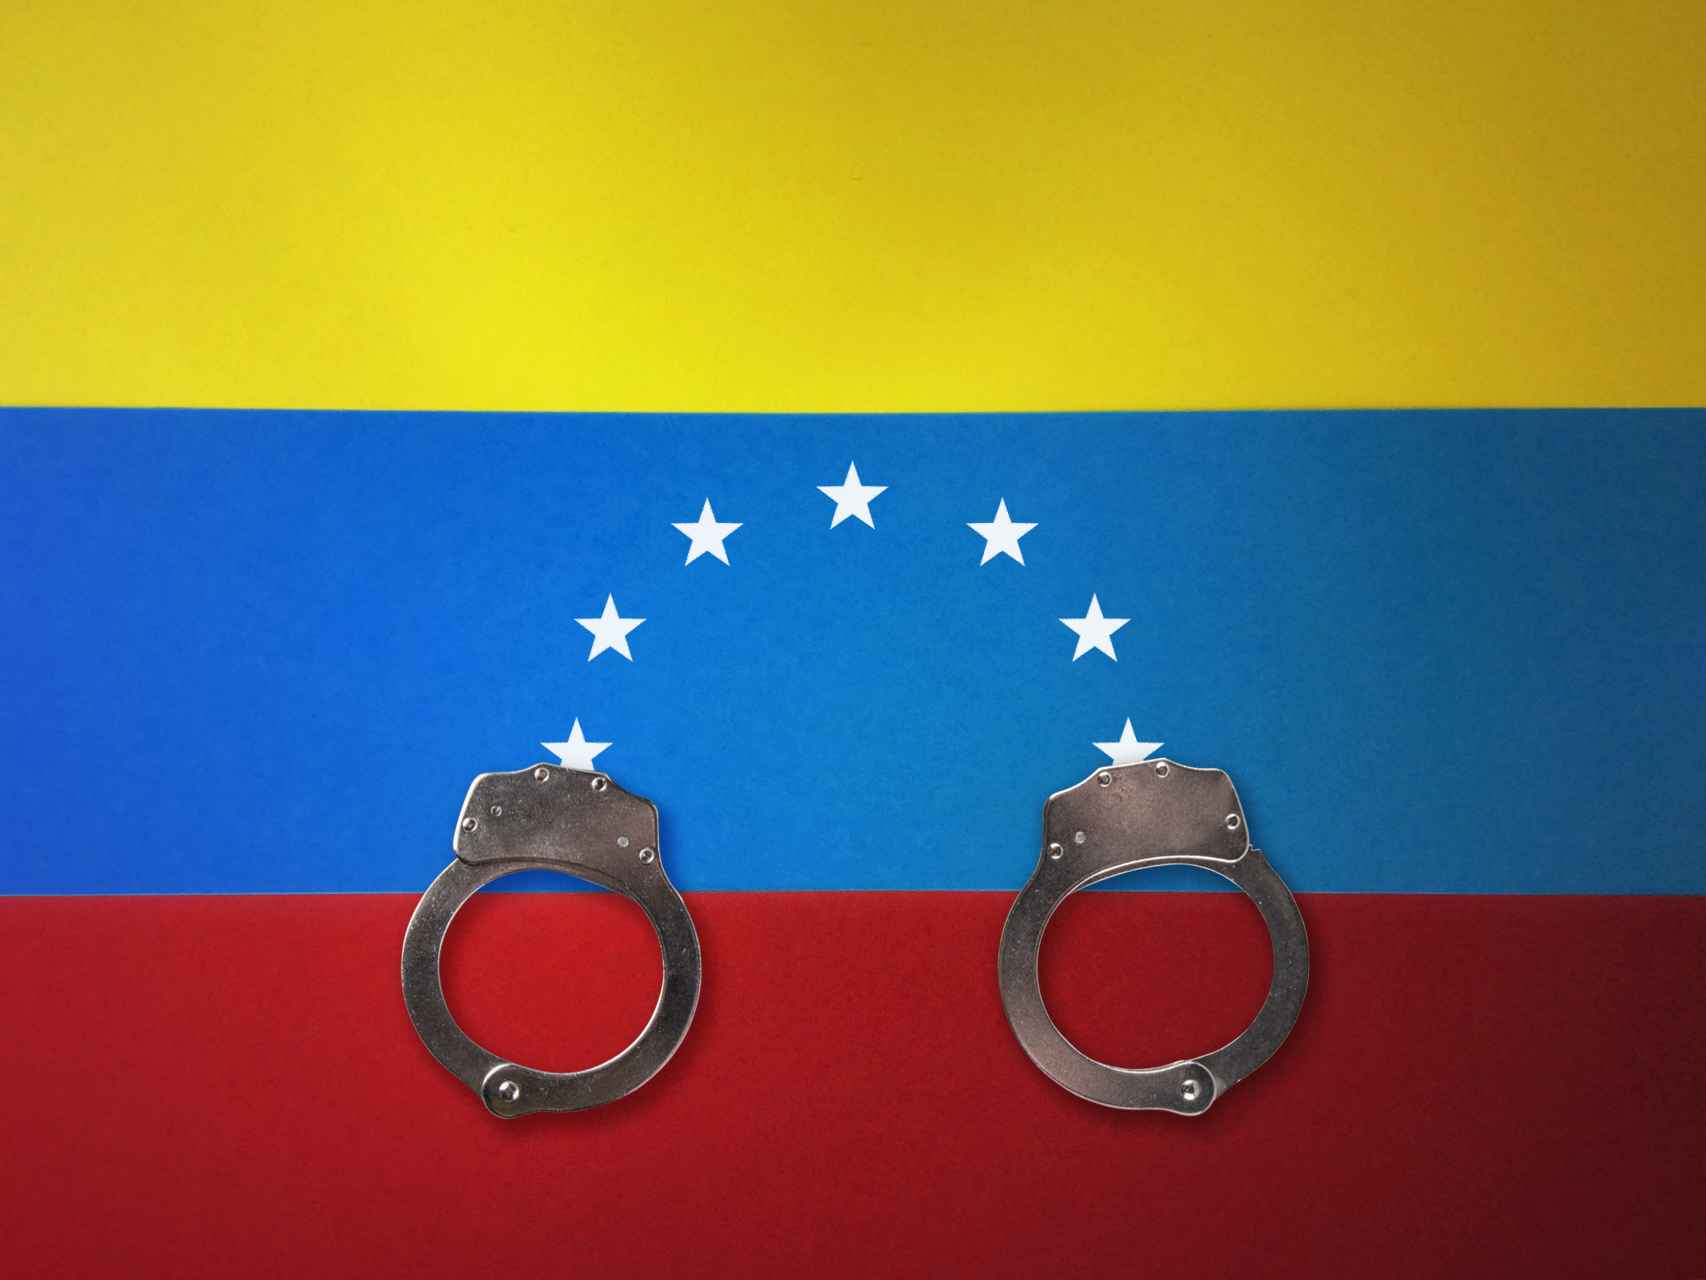 ¿Respeta Venezuela los Derechos Humanos?